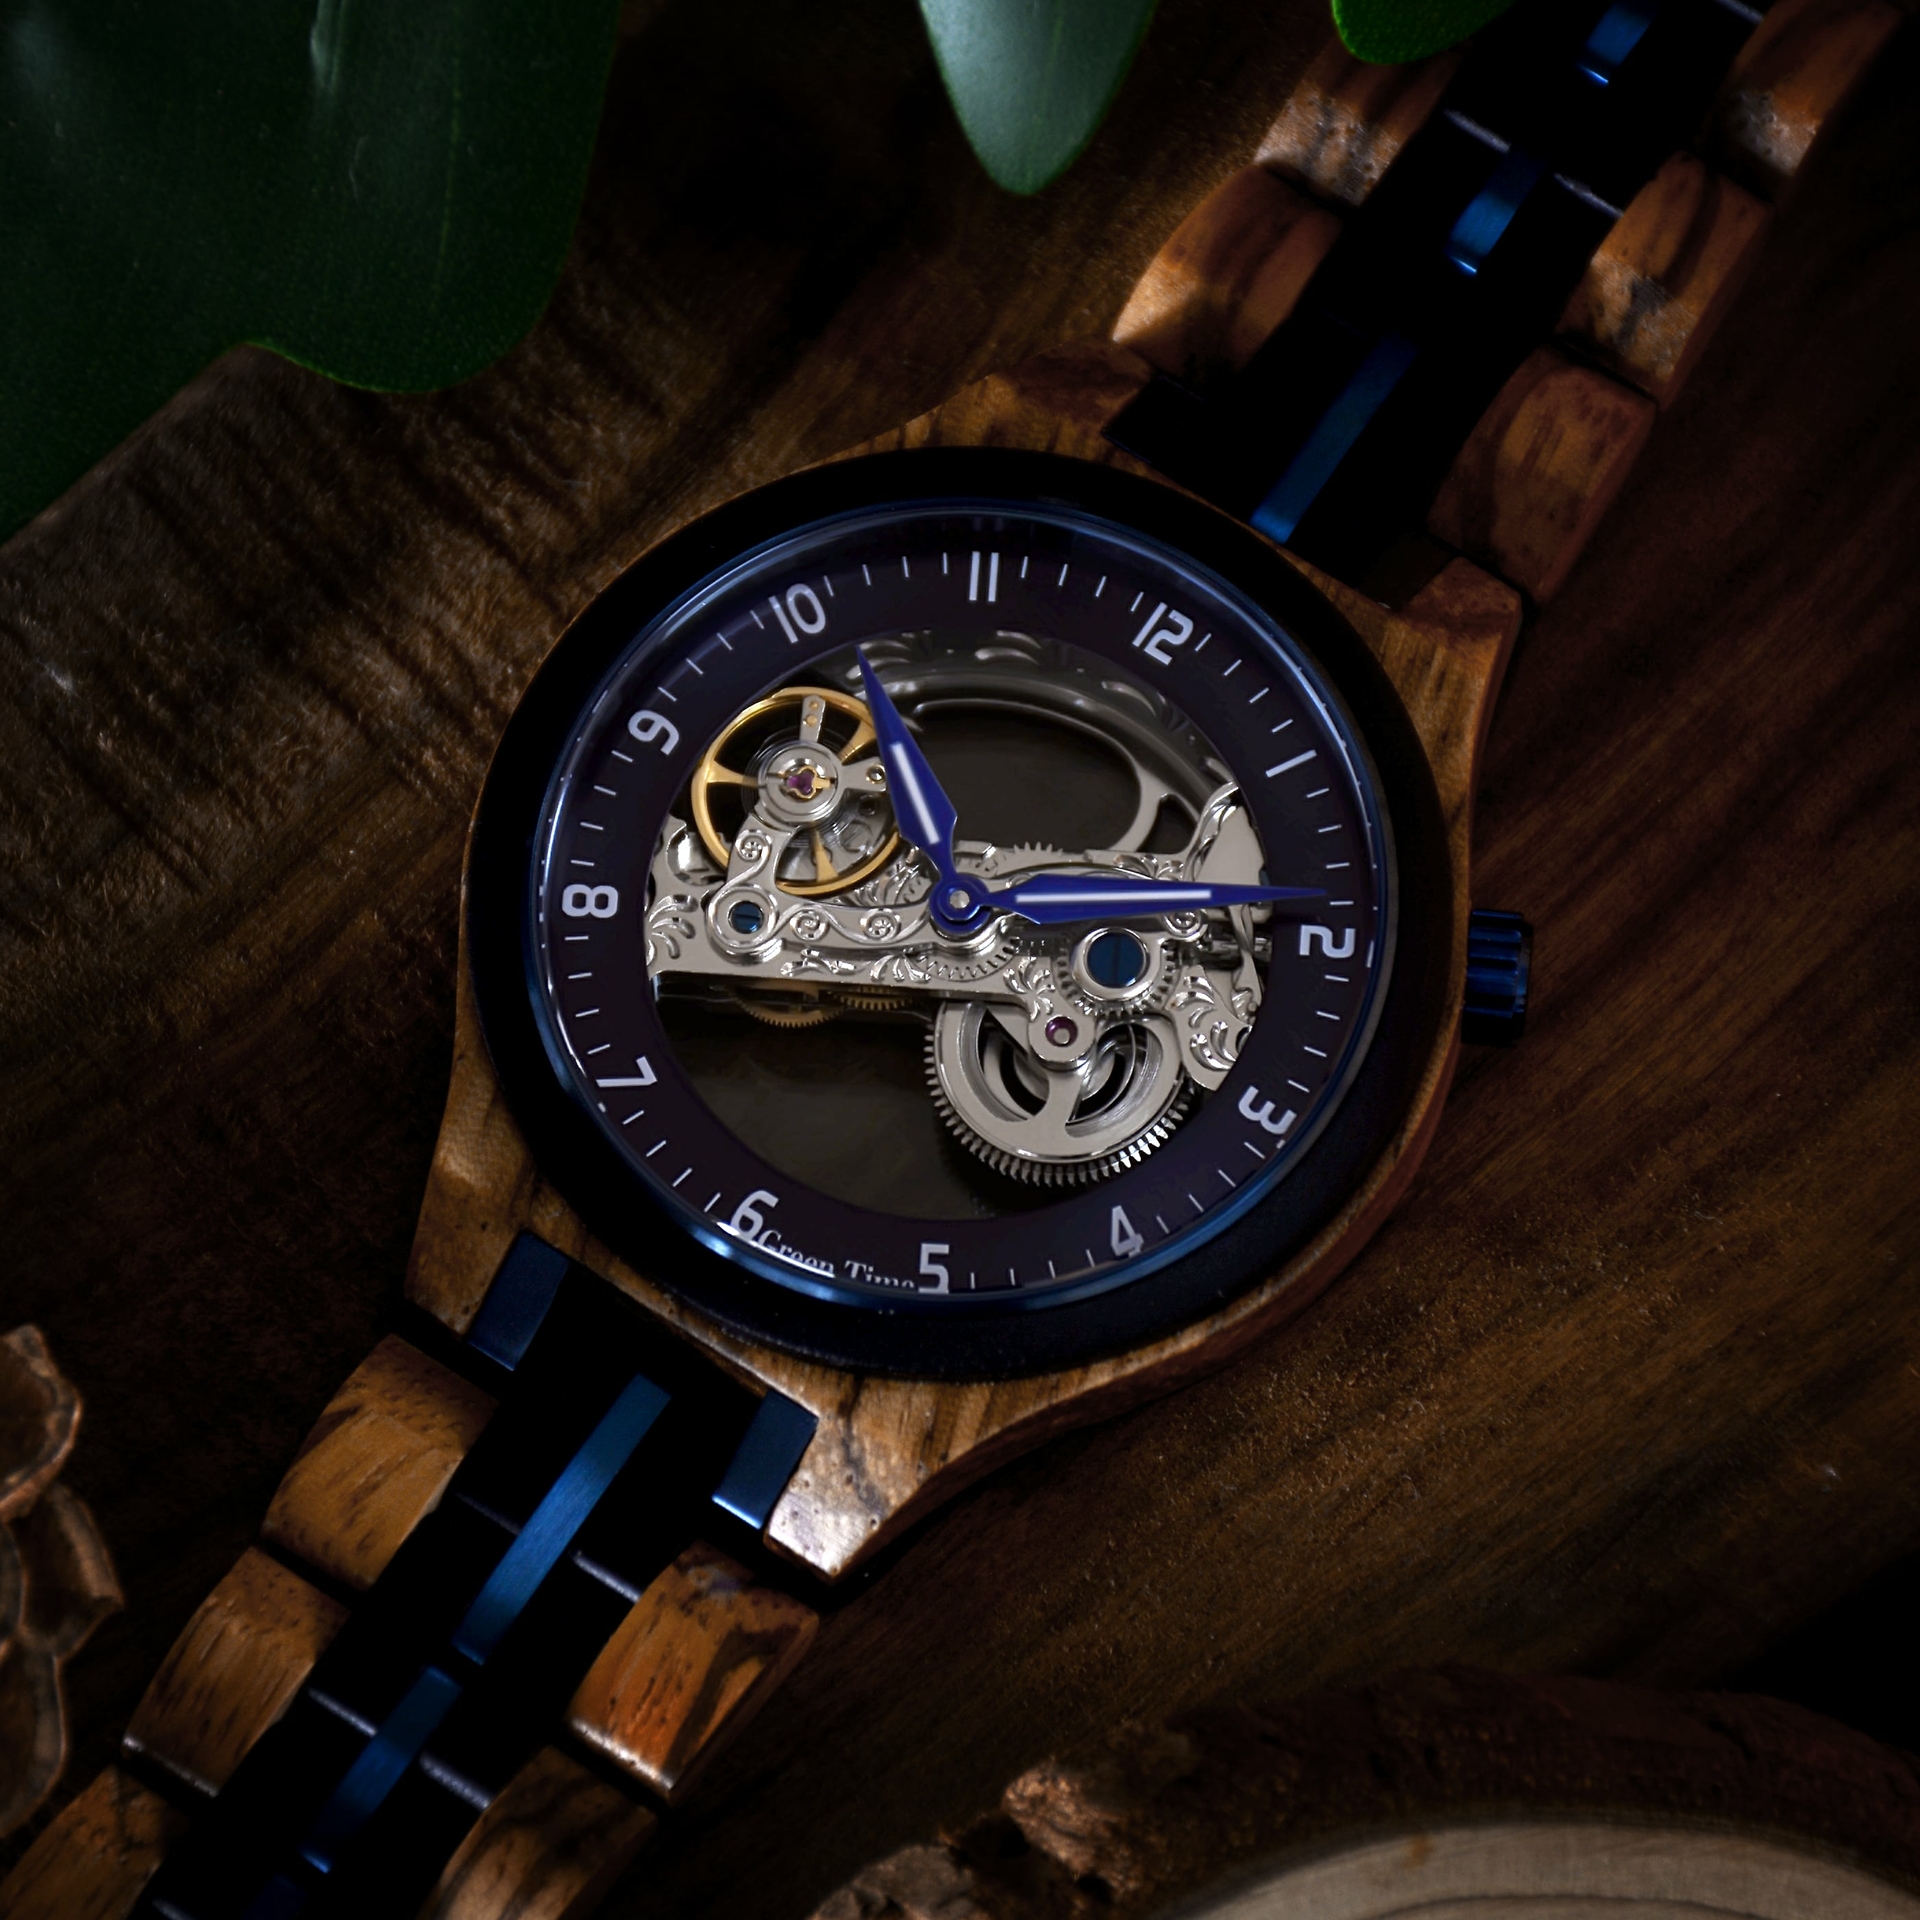 Duurzame houten heren horloges - Greentime wood watch